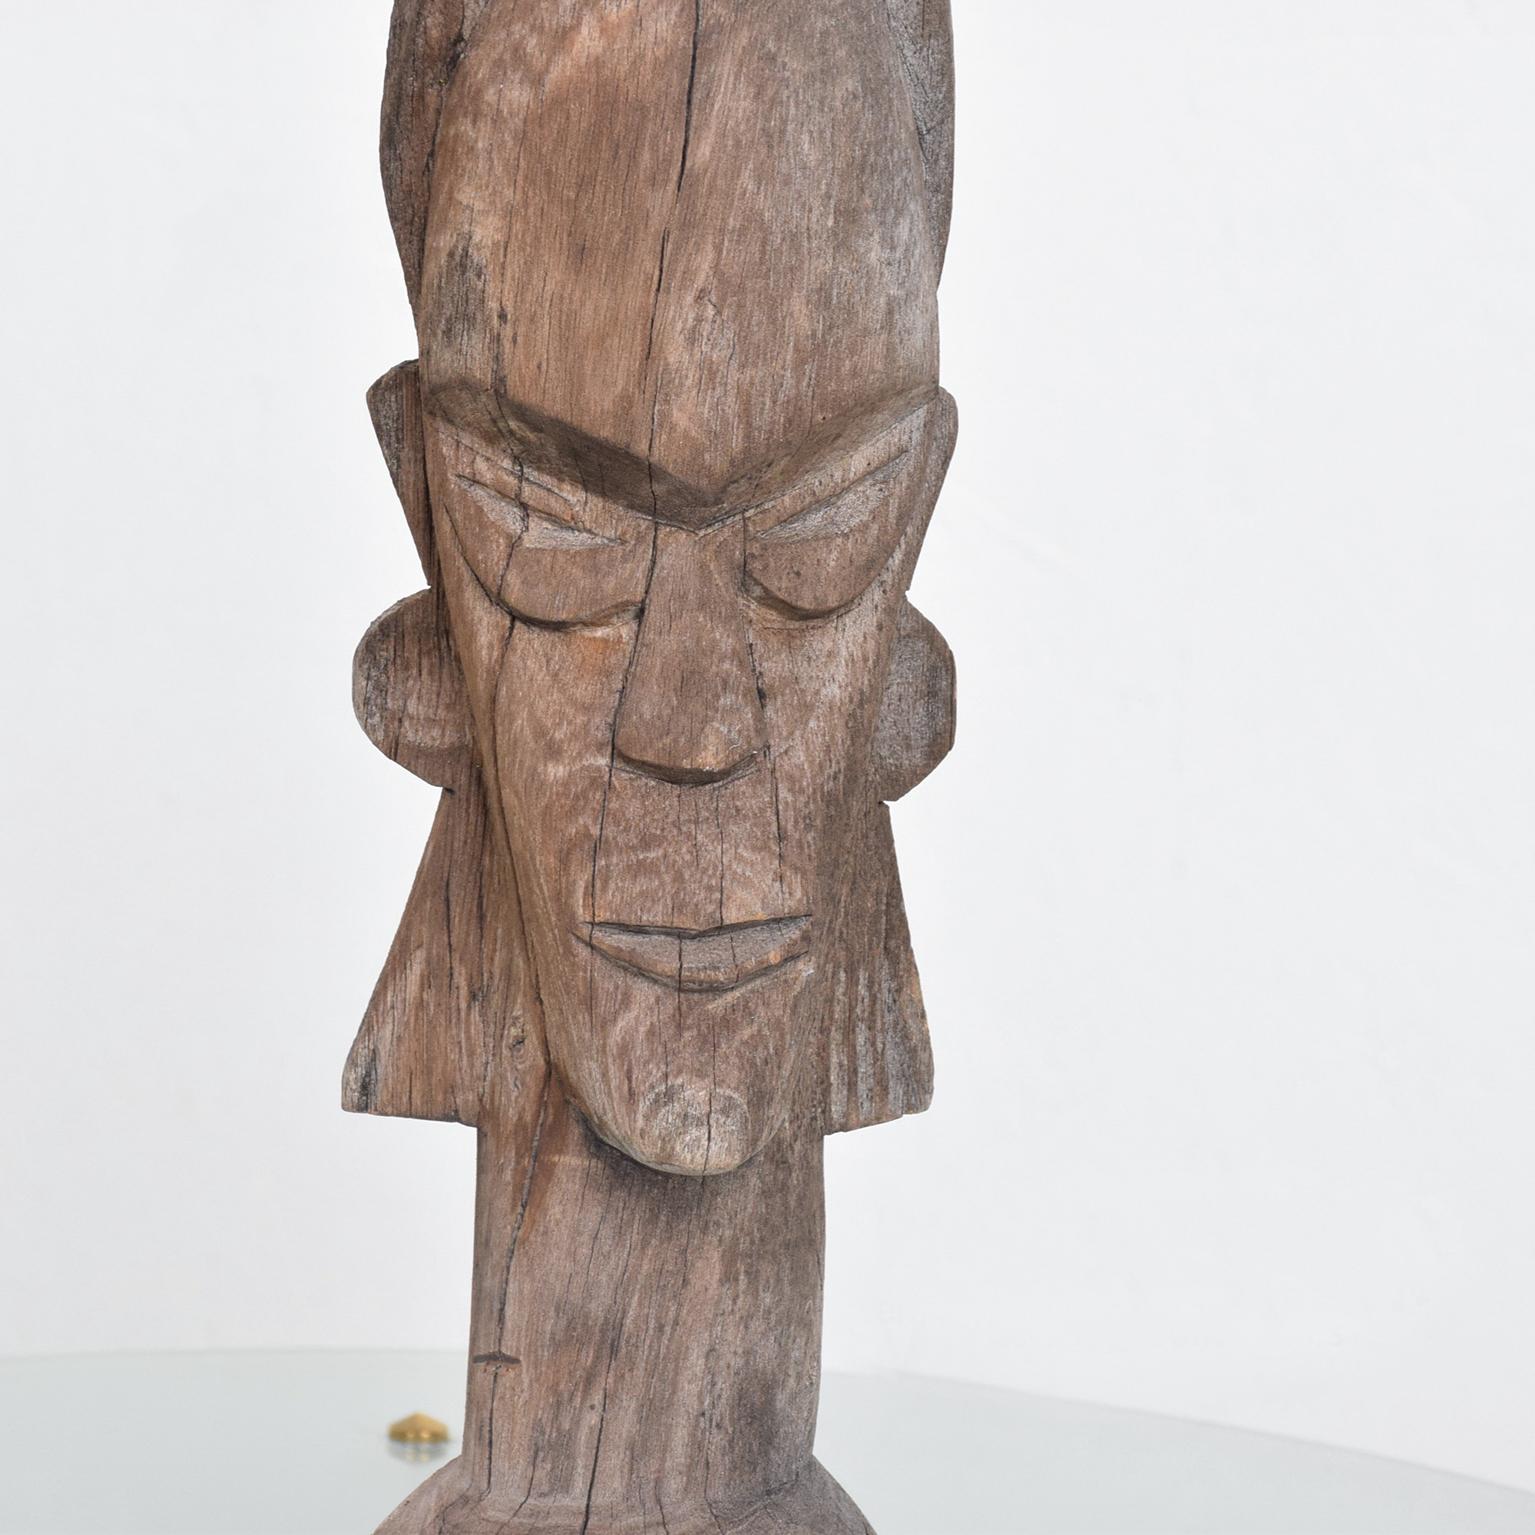 Folk Art Artisan Hand Carved Wood TOTEM Sculpture Vintage Indigenous Primitive Artwork